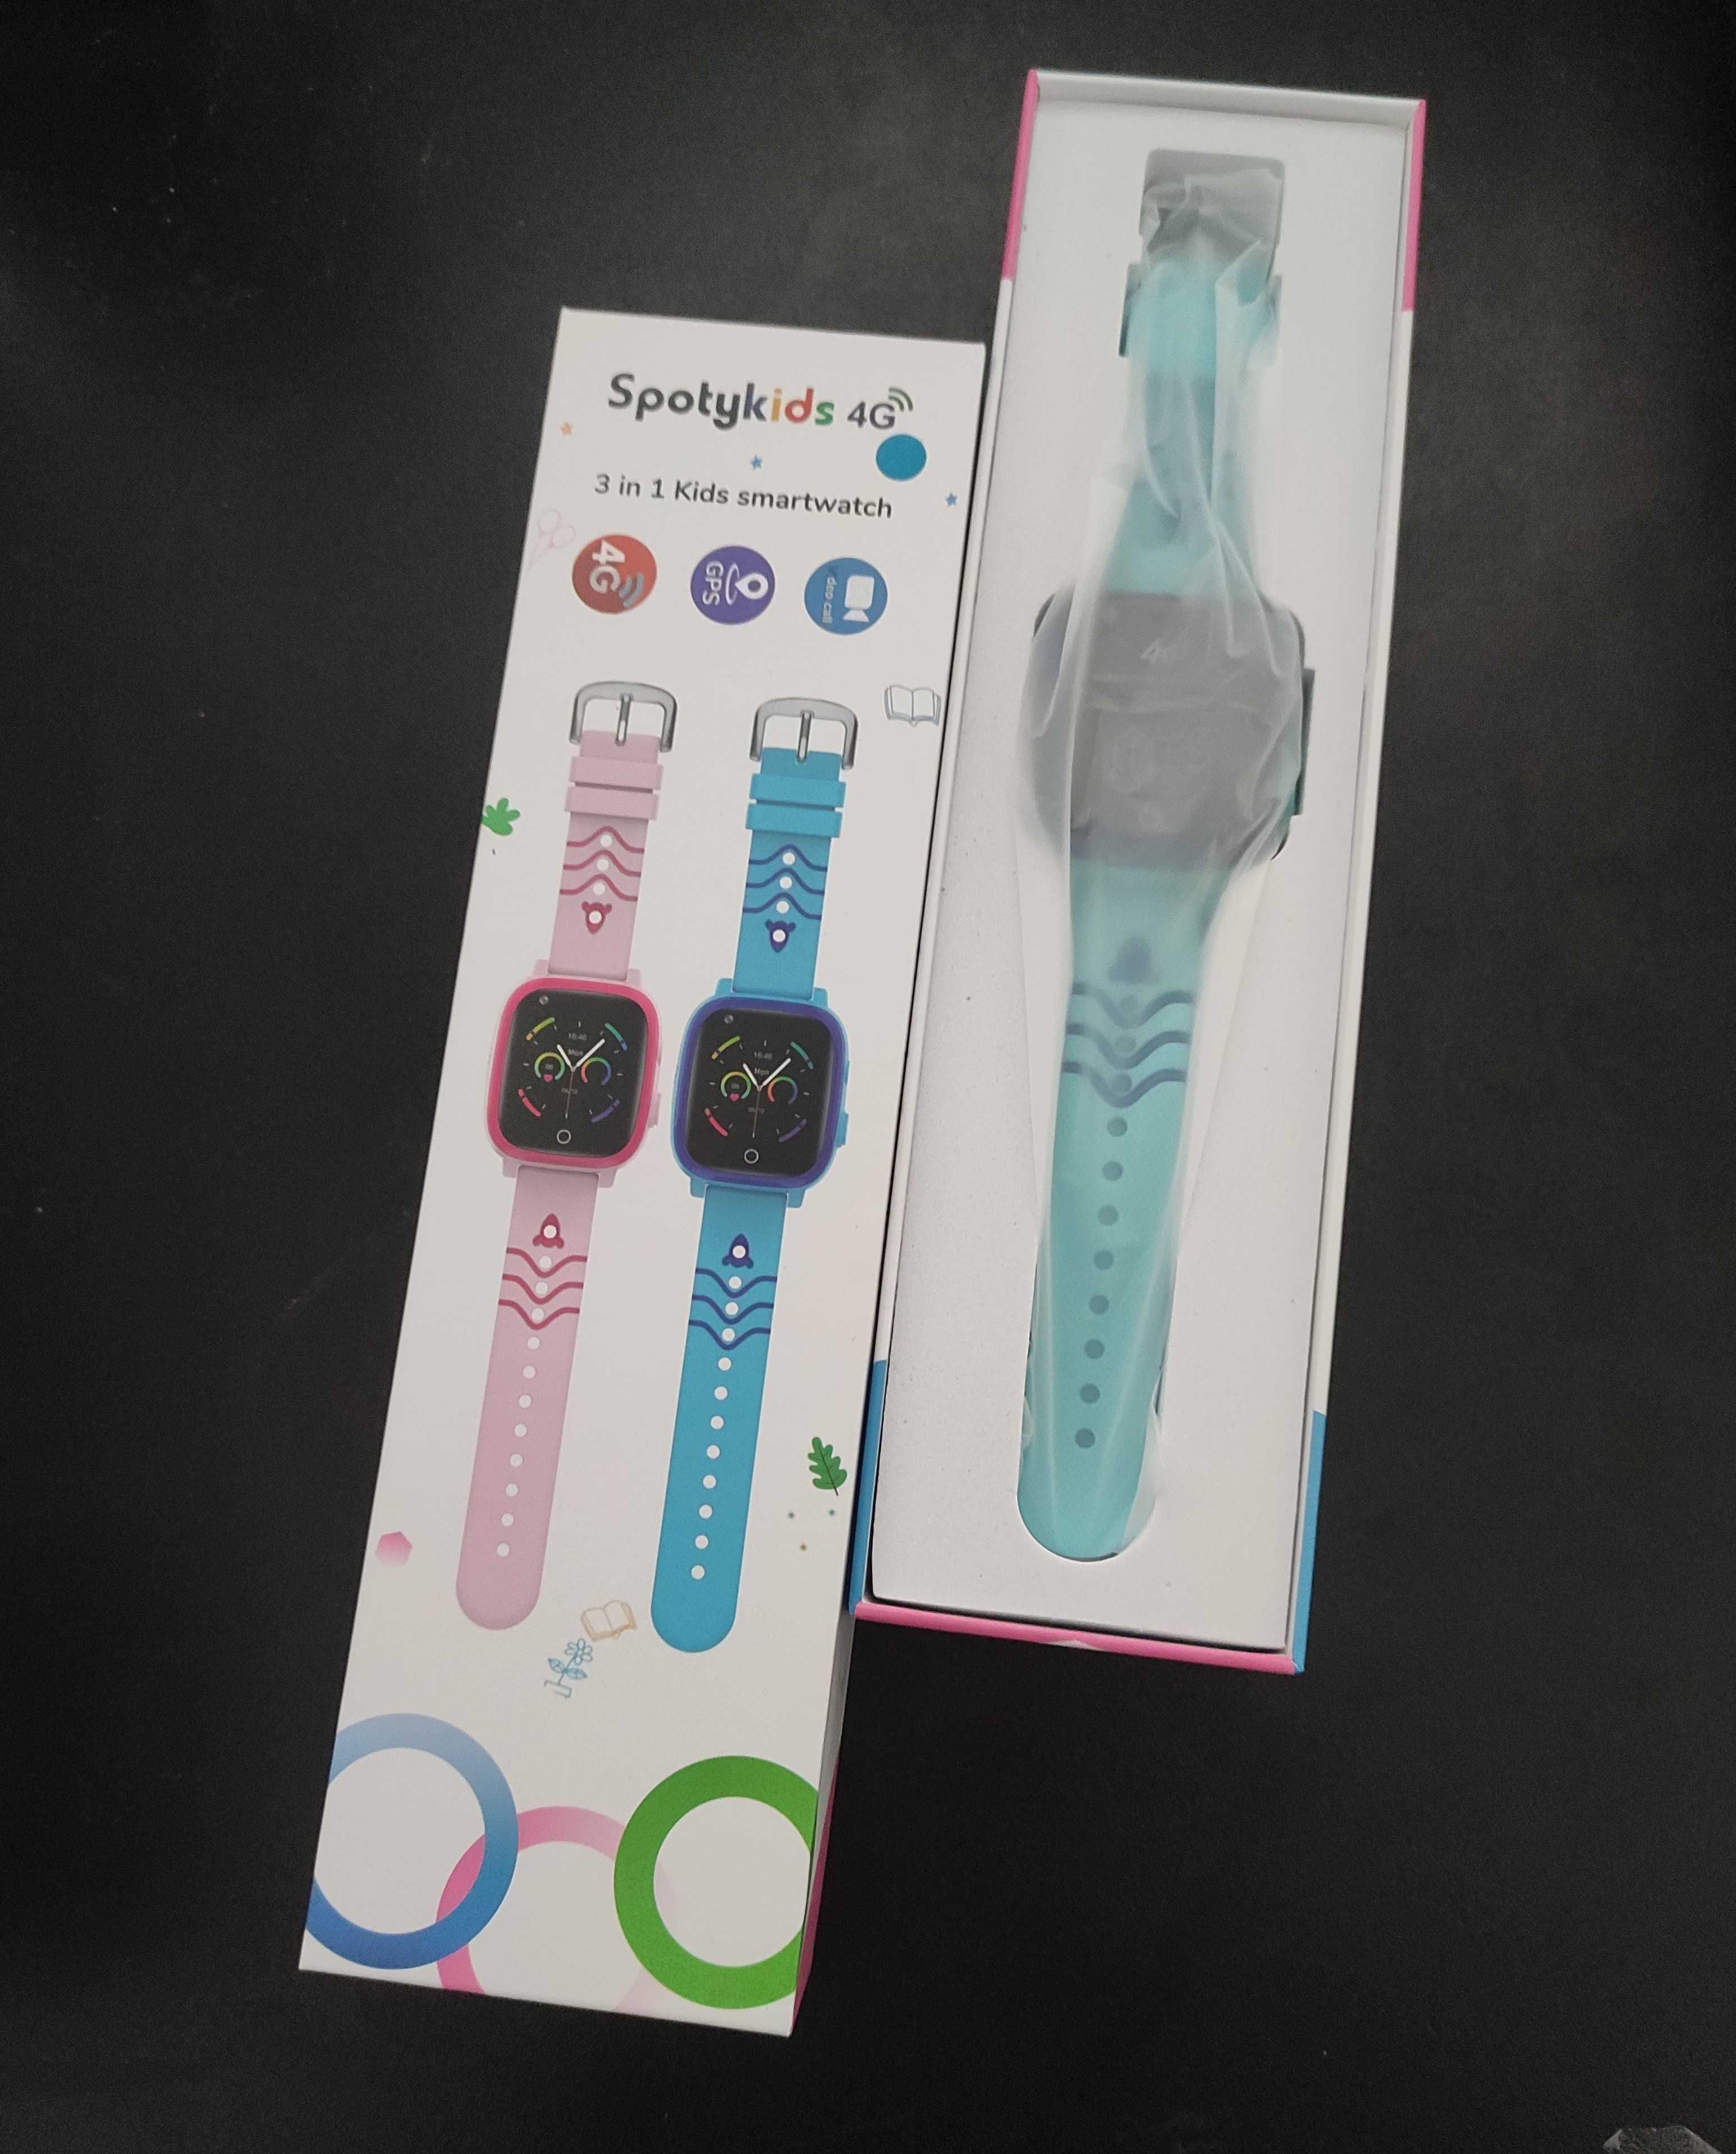 Relógio de crianças Smartwatch Spotykids 4G (Novo)